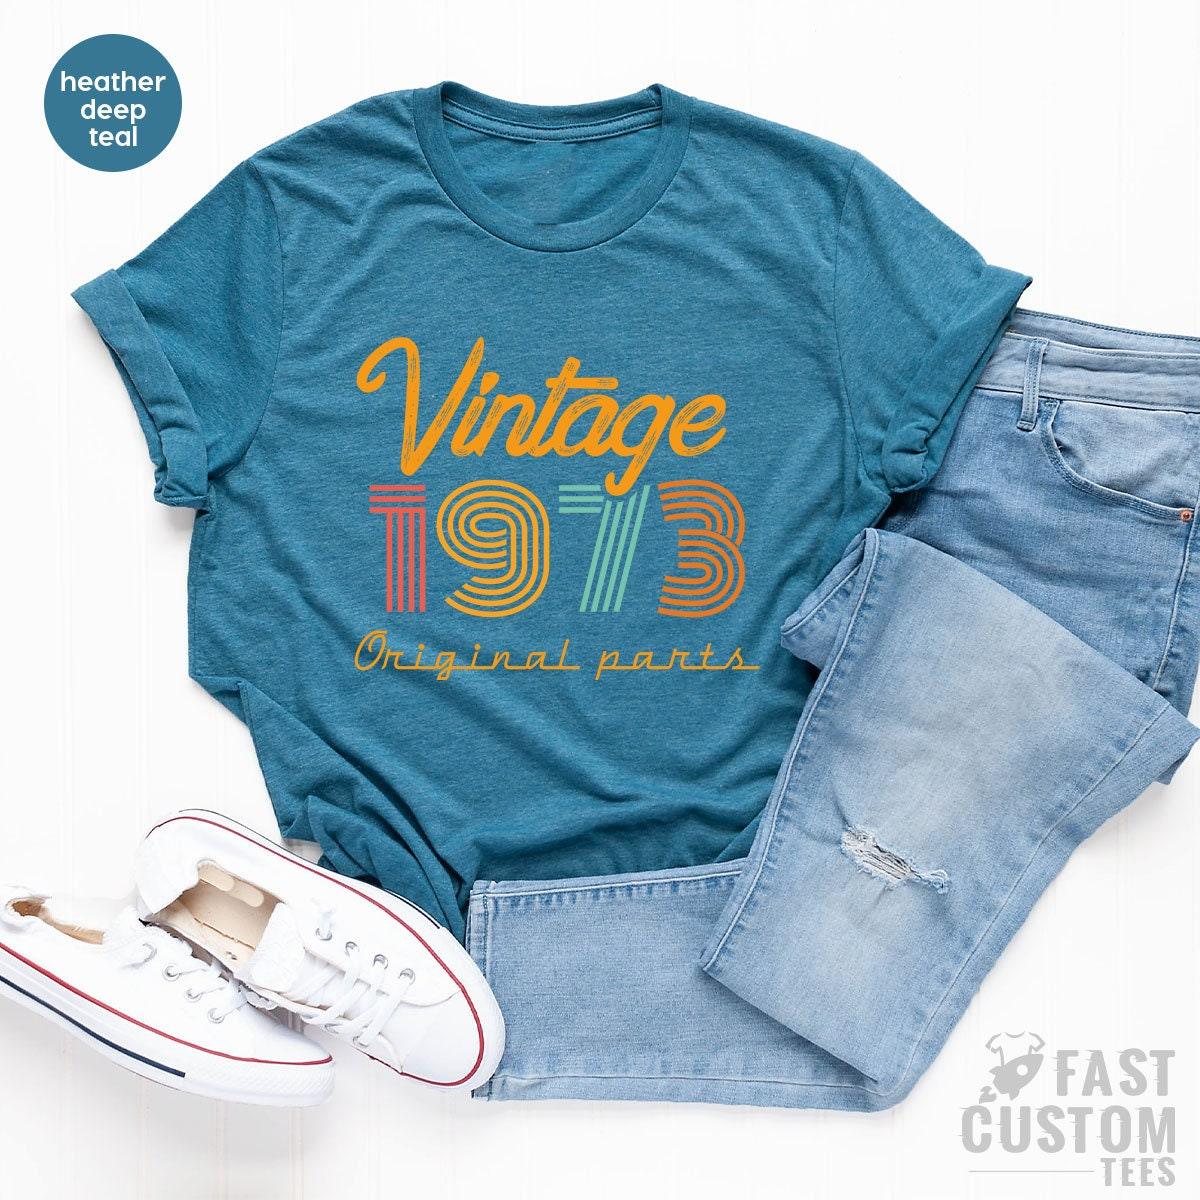 48th Birthday T Shirt, Vintage T Shirt, Vintage 1973 Shirt, 68th Birthday Gift For Women, 48th Birthday Shirt Men, Retro Shirt, Vintage Shirts - Fastdeliverytees.com